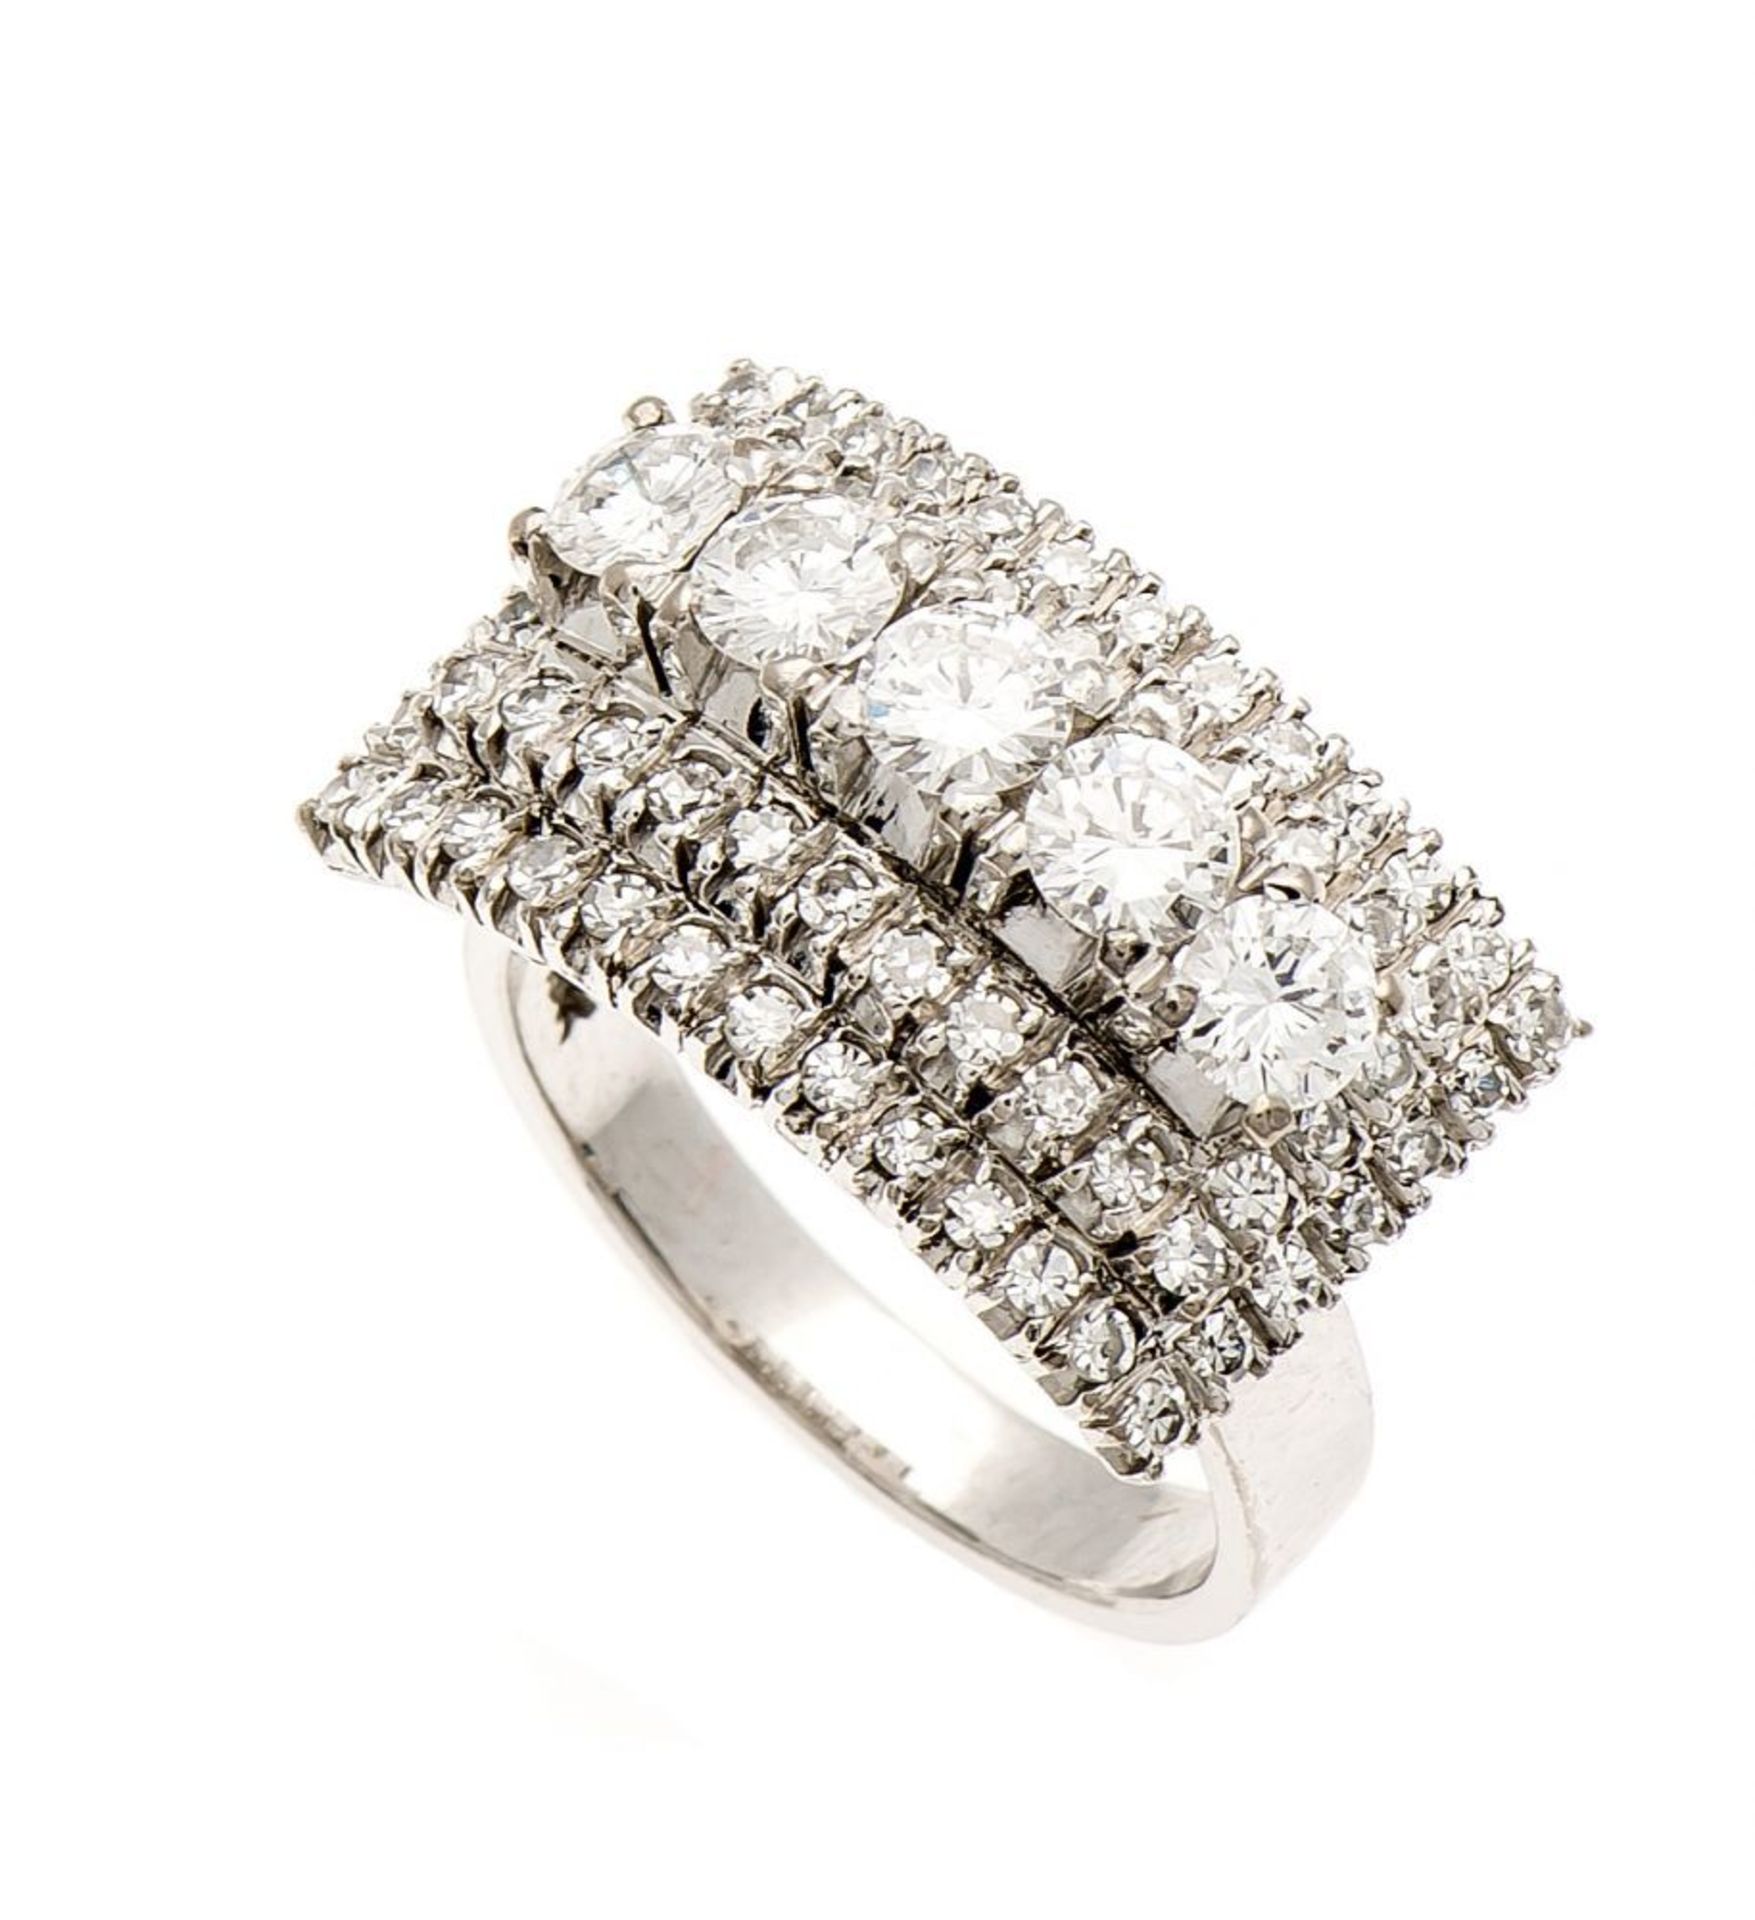 Brillant-Ring WG 750/000 mit 5 Brillanten, zus. 1,0 ct und 64 Diamanten, zus. 1,15 ct TW (F-G)/